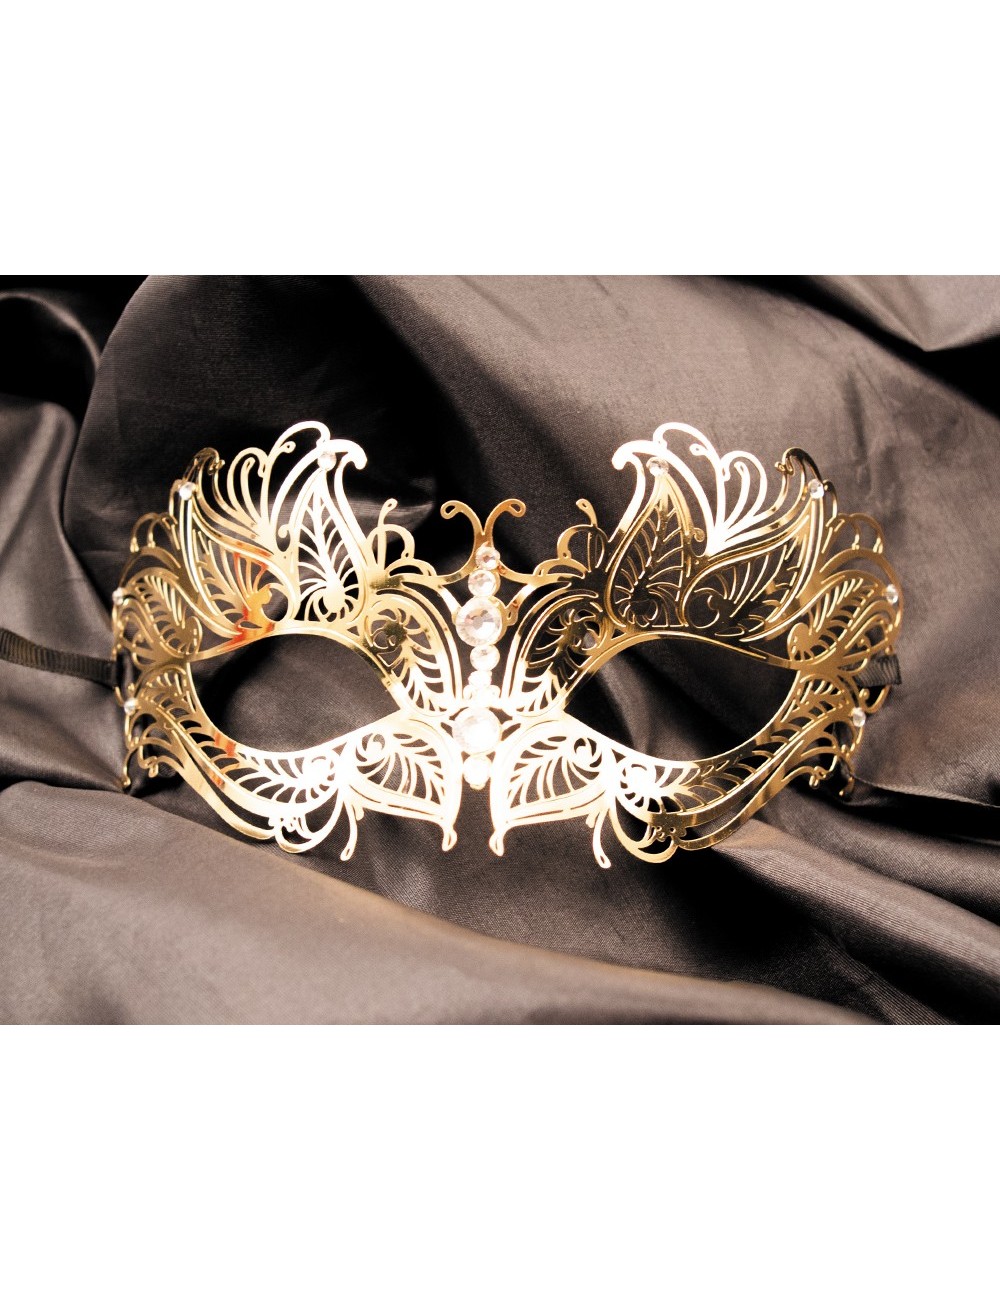 Masque vénitien Greta rigide doré avec strass - HMJ-005B